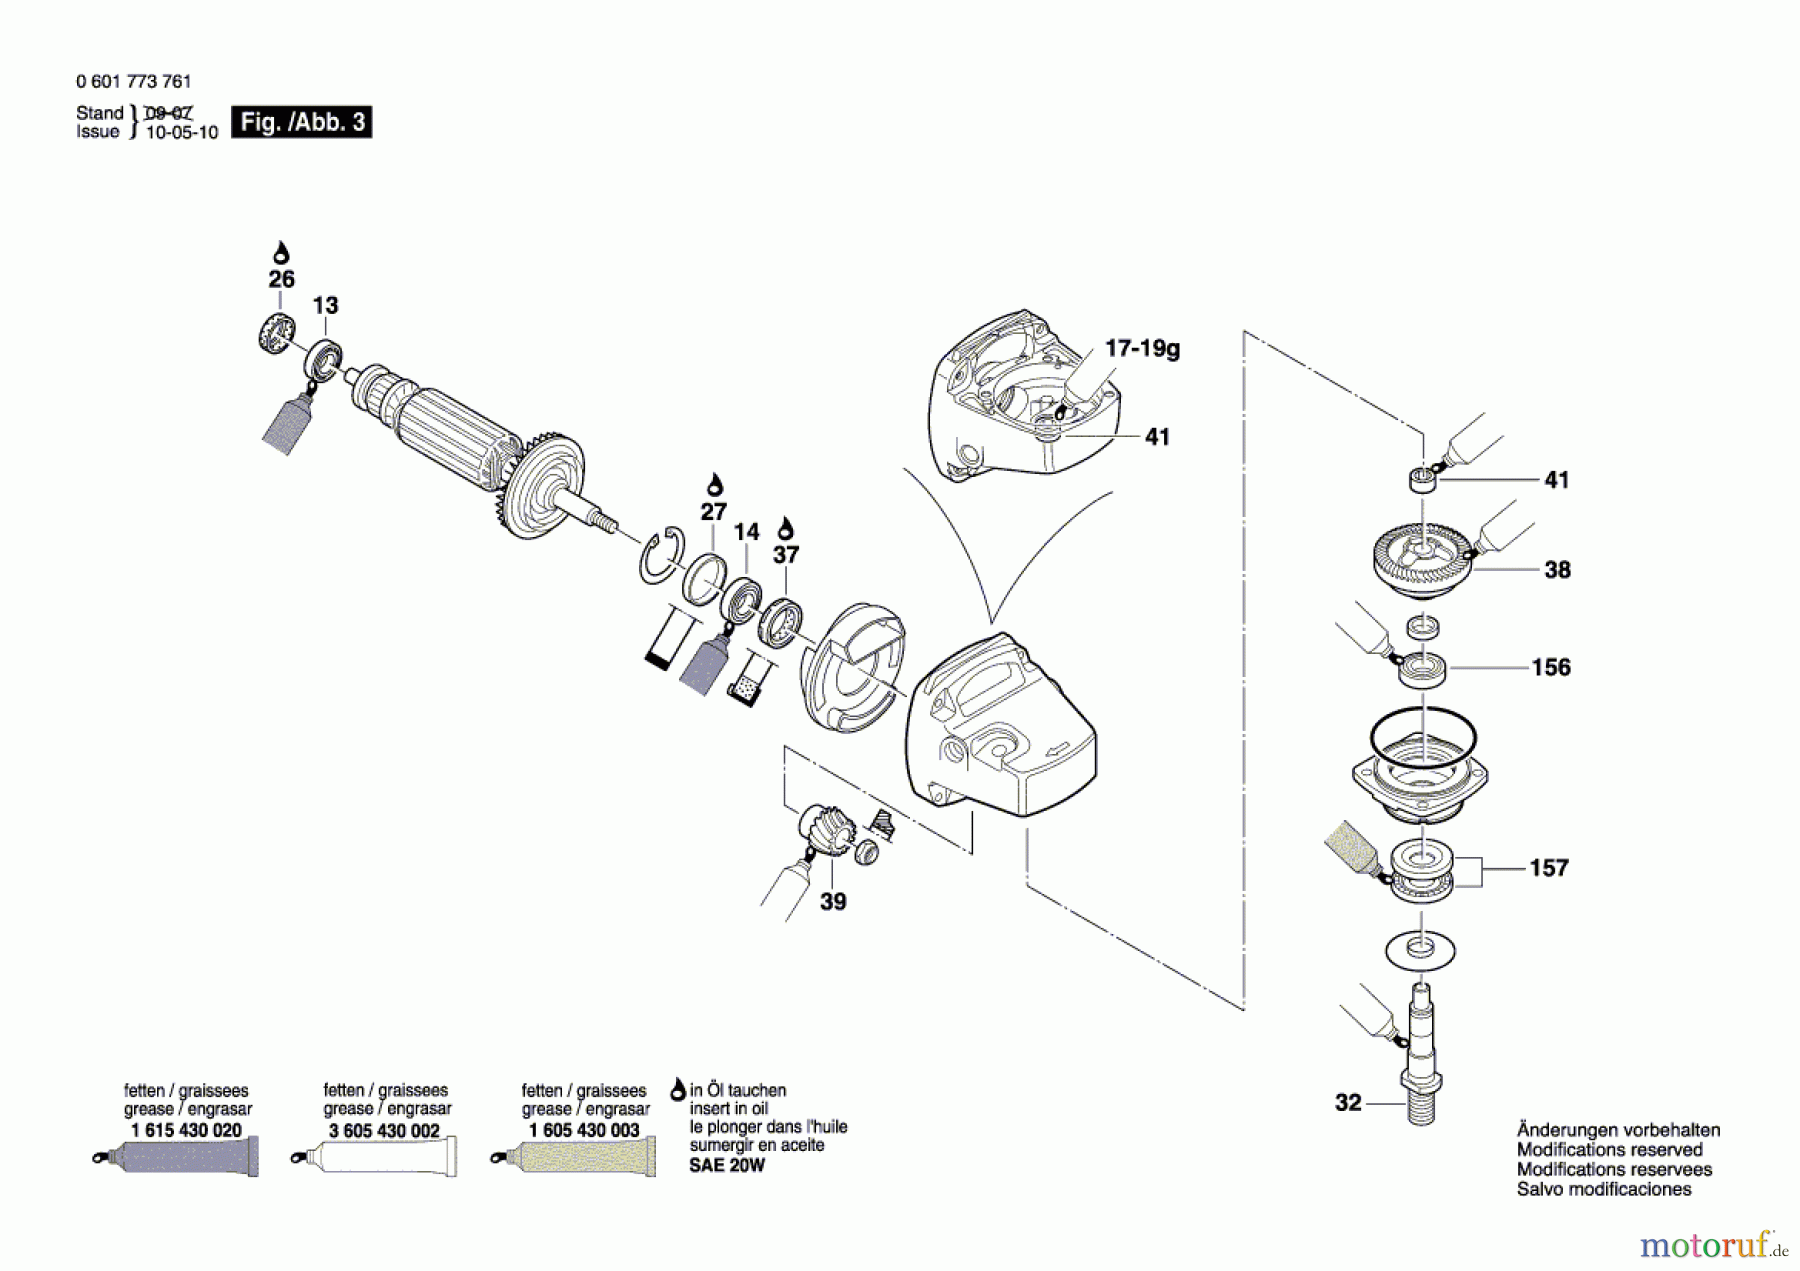  Bosch Werkzeug Betonschleifer GBR 14 C Seite 3